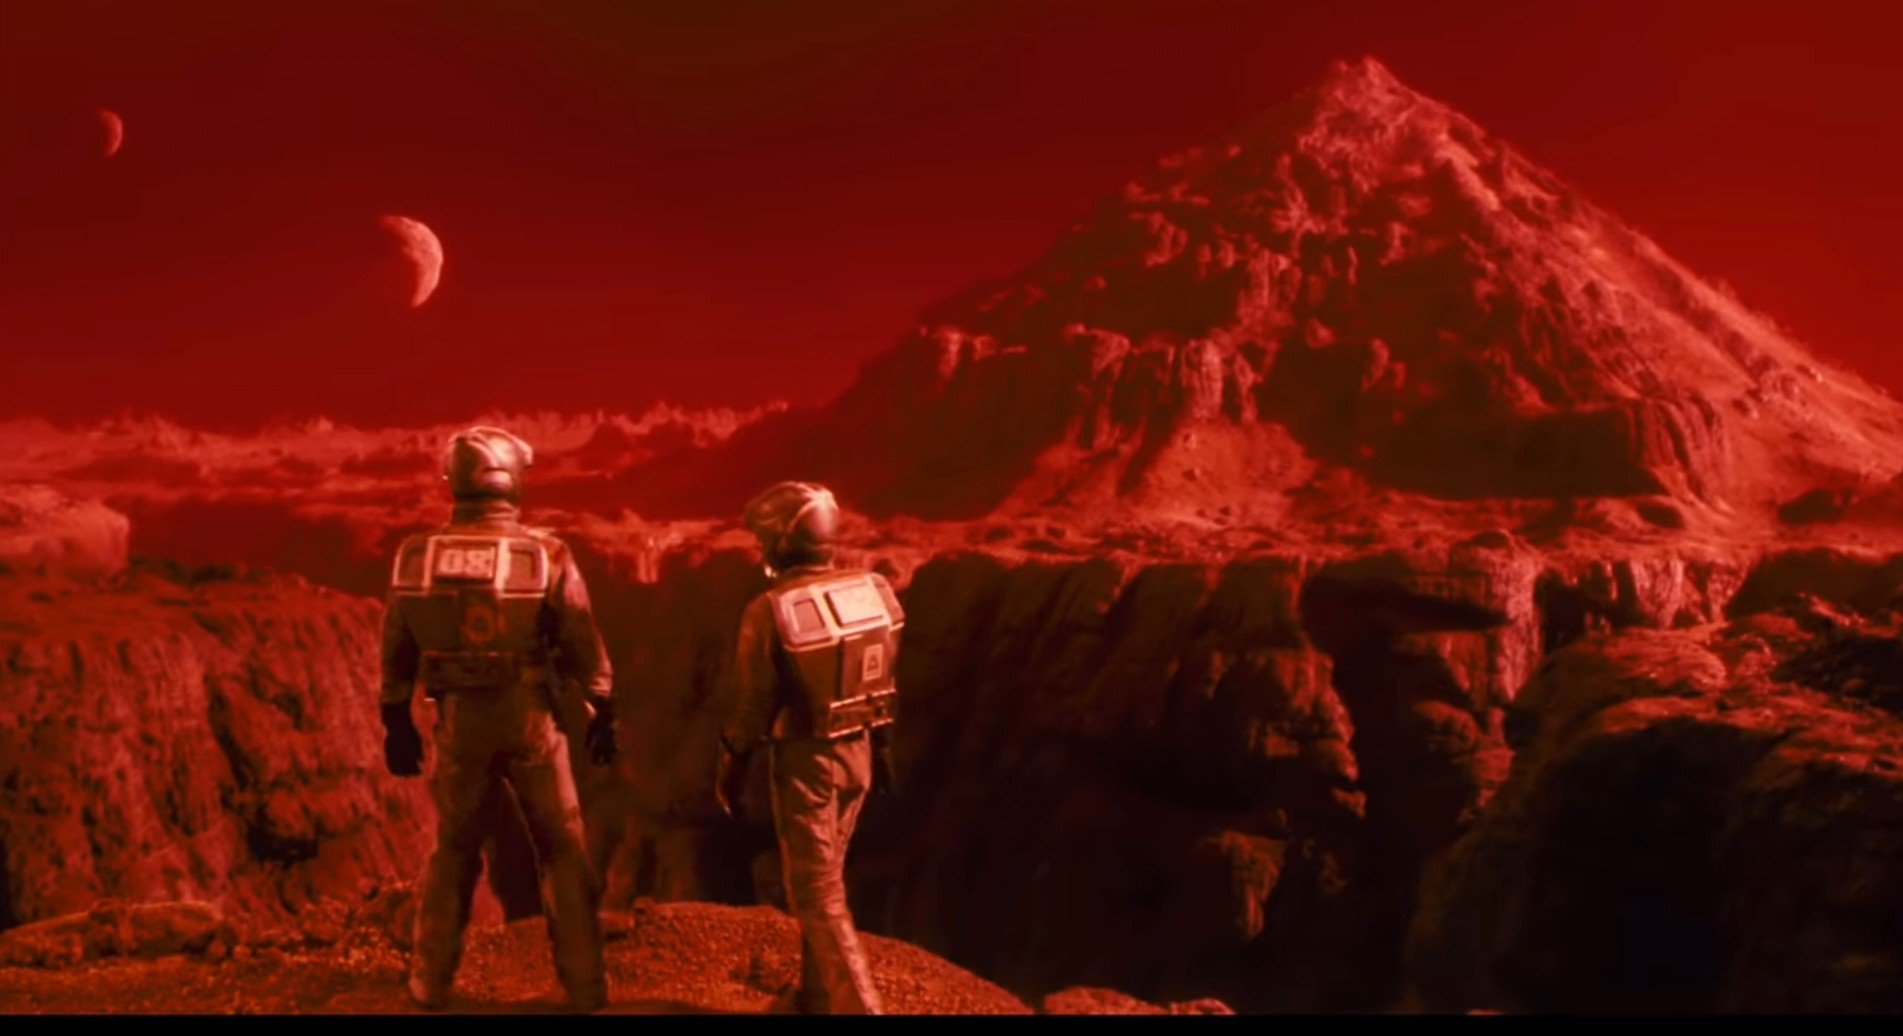 Ілюстративне зображення про майбутню колонізацію Марсу